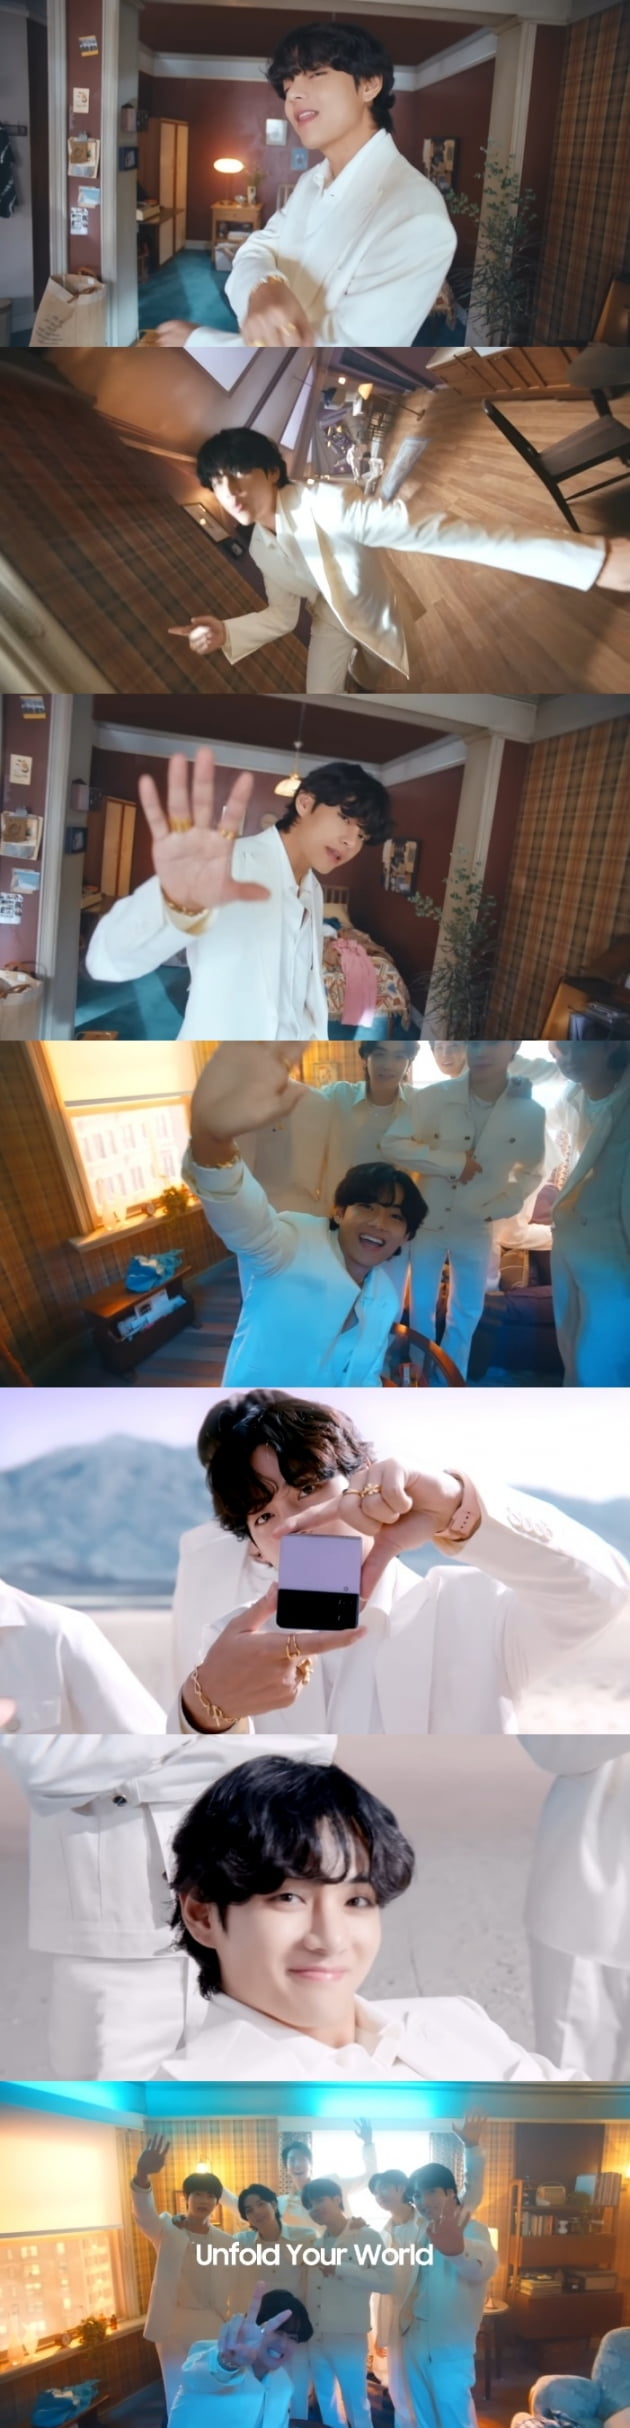 방탄소년단 뷔, '갤럭시Z 플립4 X BTS' MV "다이내믹한 매력에 글로벌 팬들 환호"